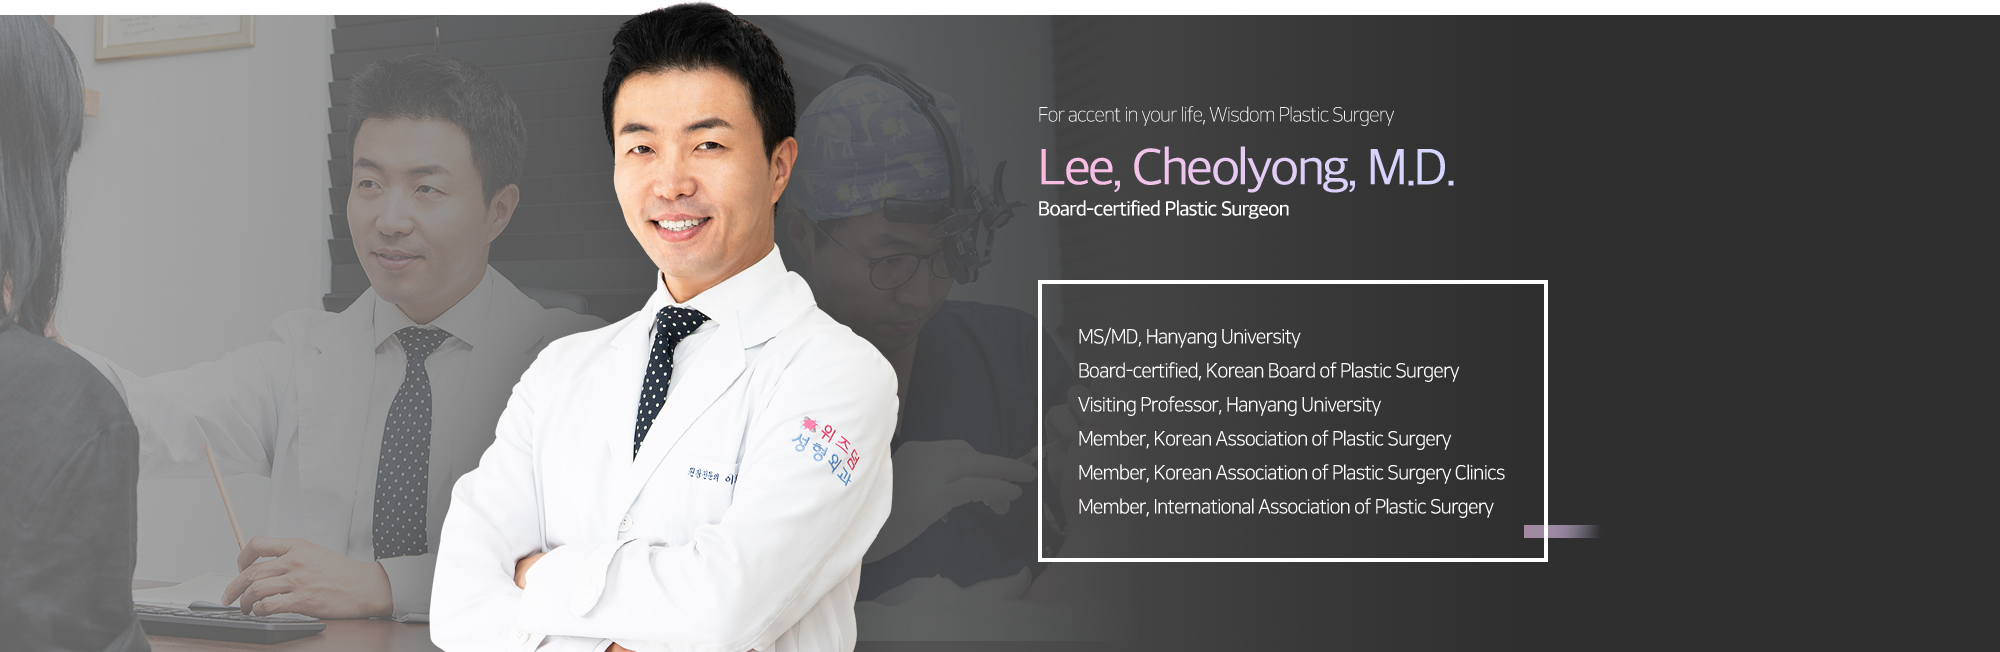 Lee, Cheolyong, M.D.